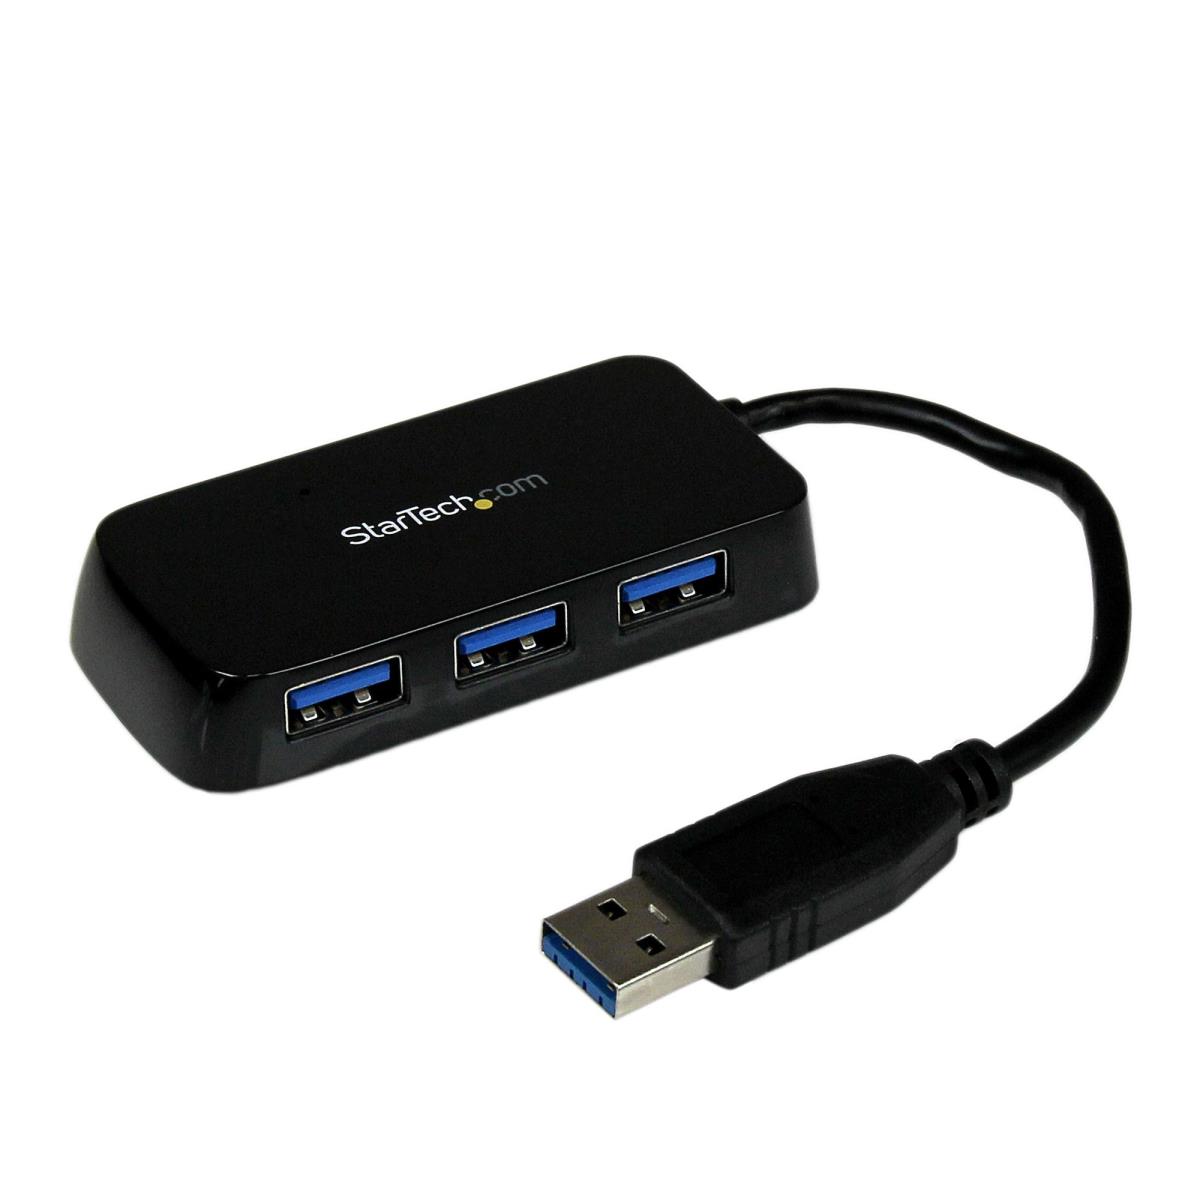 TARGUS Concentrateur USB-C 3 Ports USB 3.0 - Noir - Achat / Vente